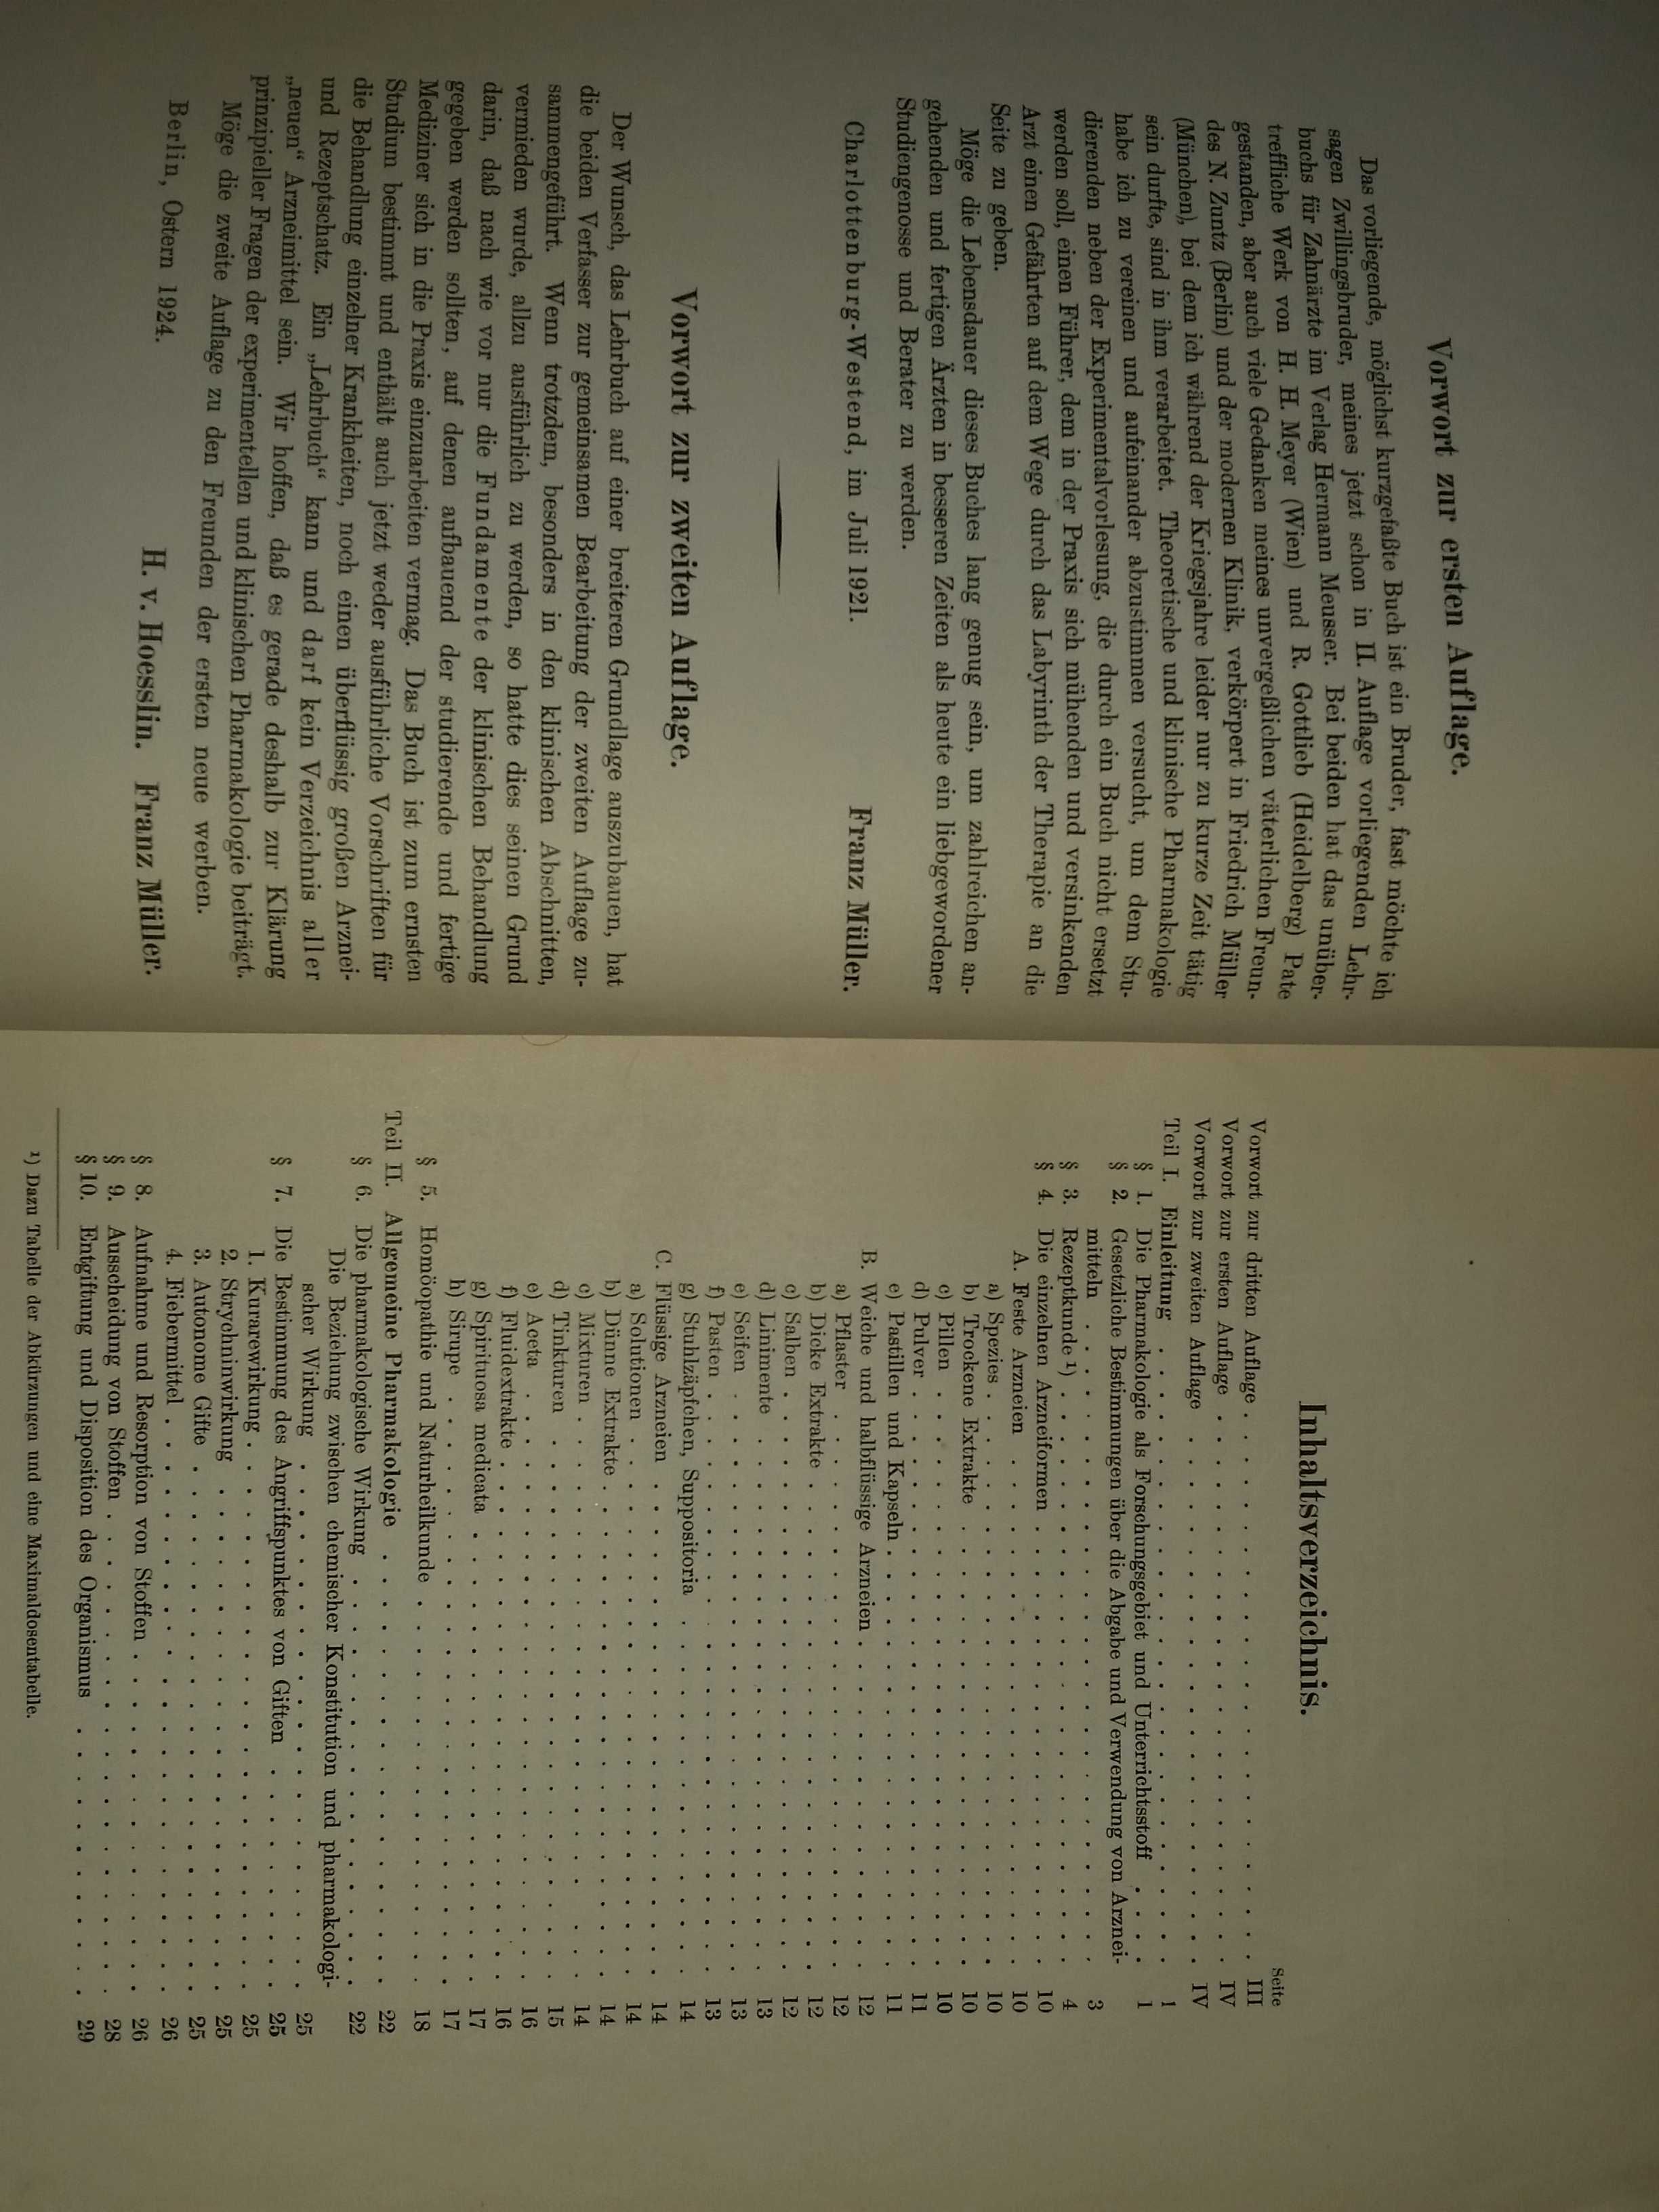 Farmakologia Pharmakologie 1929 unikat książka przedwojenna antyk